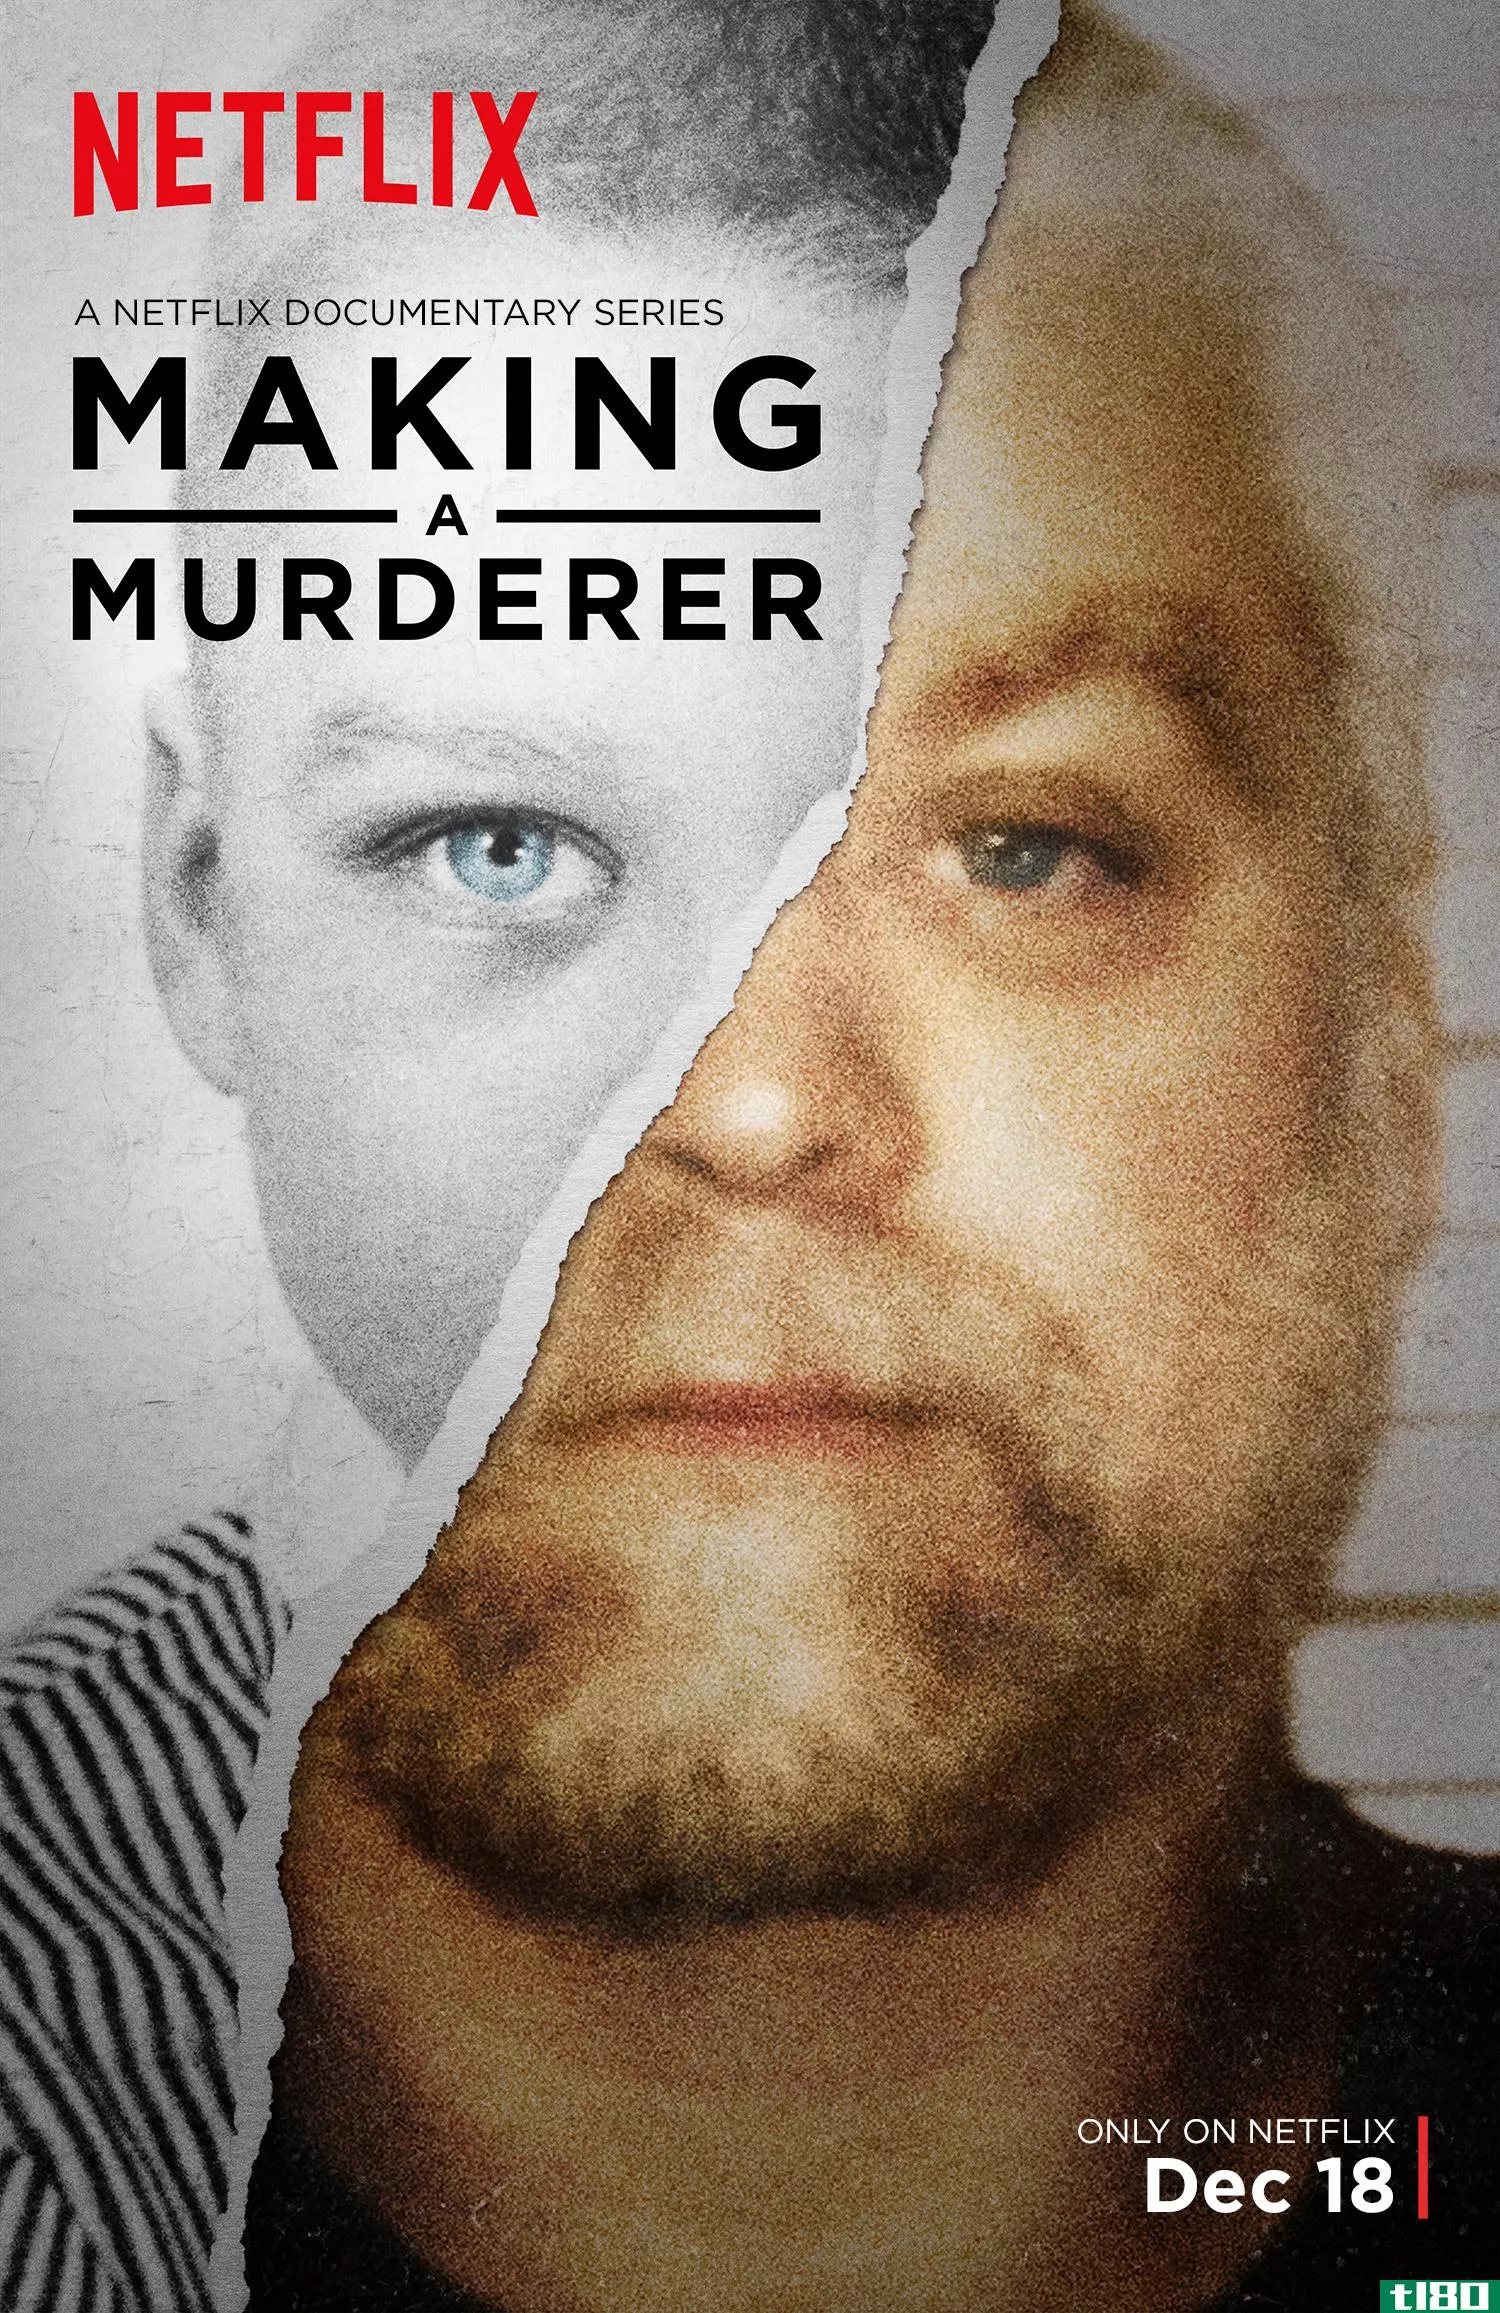 netflix凭借《杀人犯》一跃成为真正的犯罪纪录片